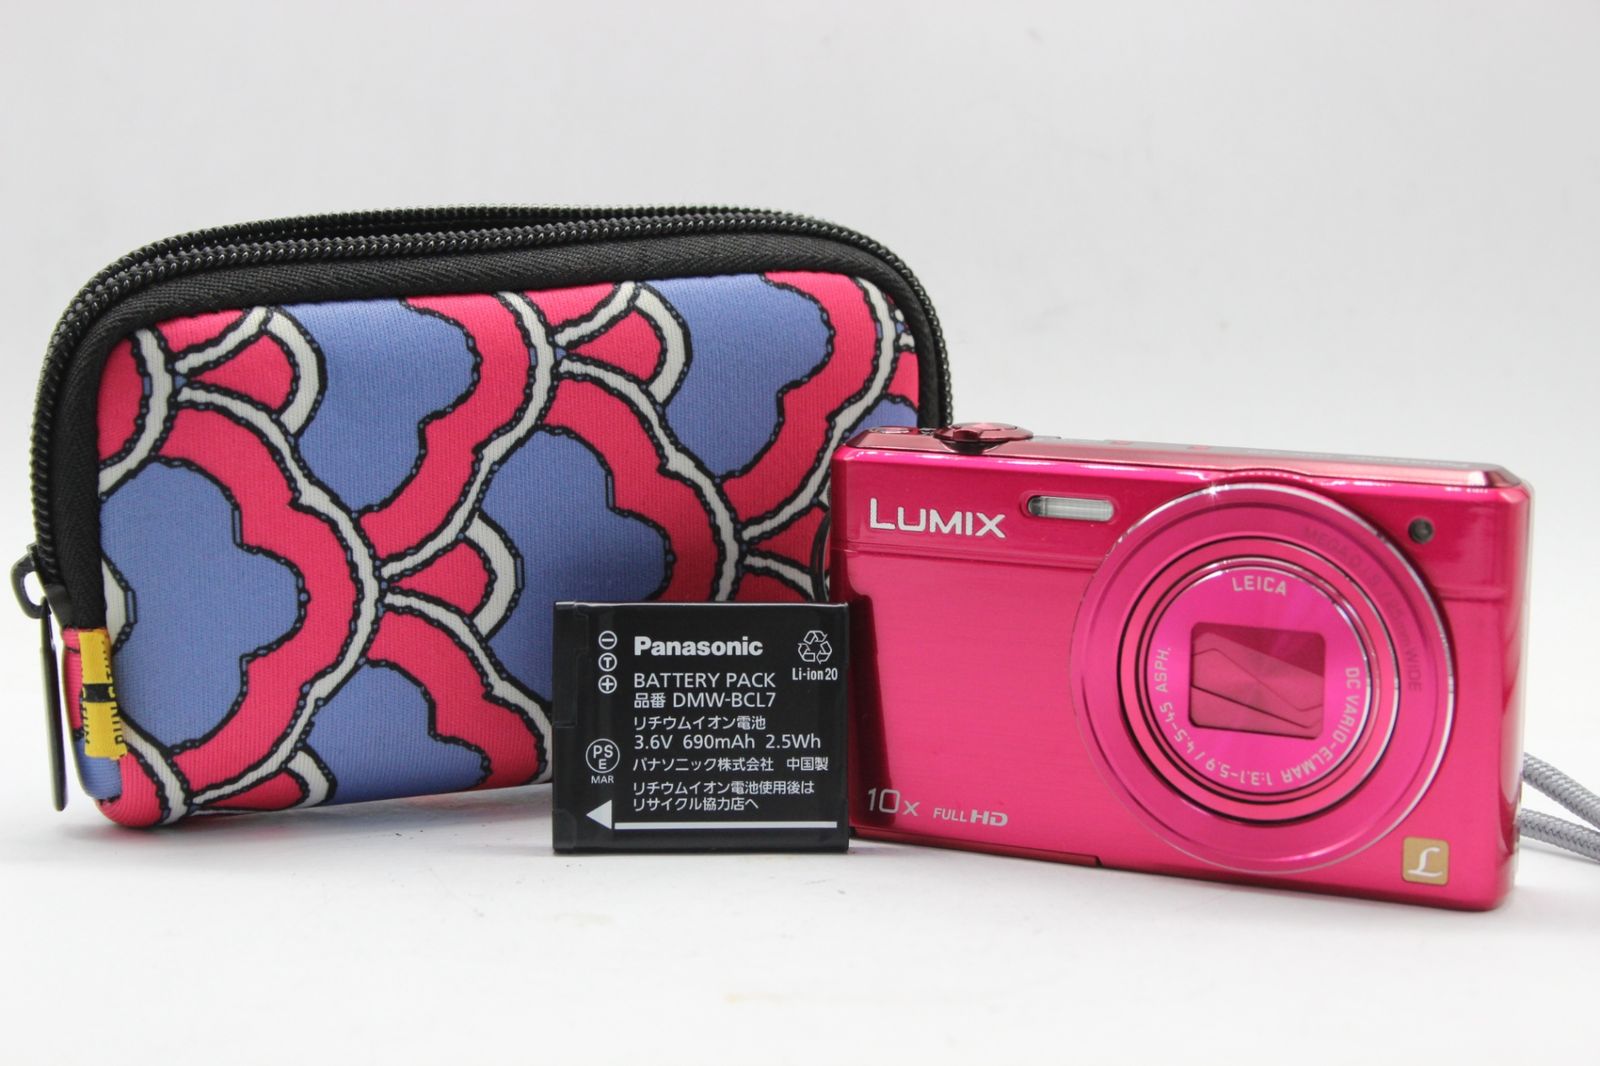 Panasonic 【美品 返品保証】 パナソニック Panasonic LUMIX DMC-SZ9 ピンク 10x バッテリー付き コンパクトデジタルカメラ v575